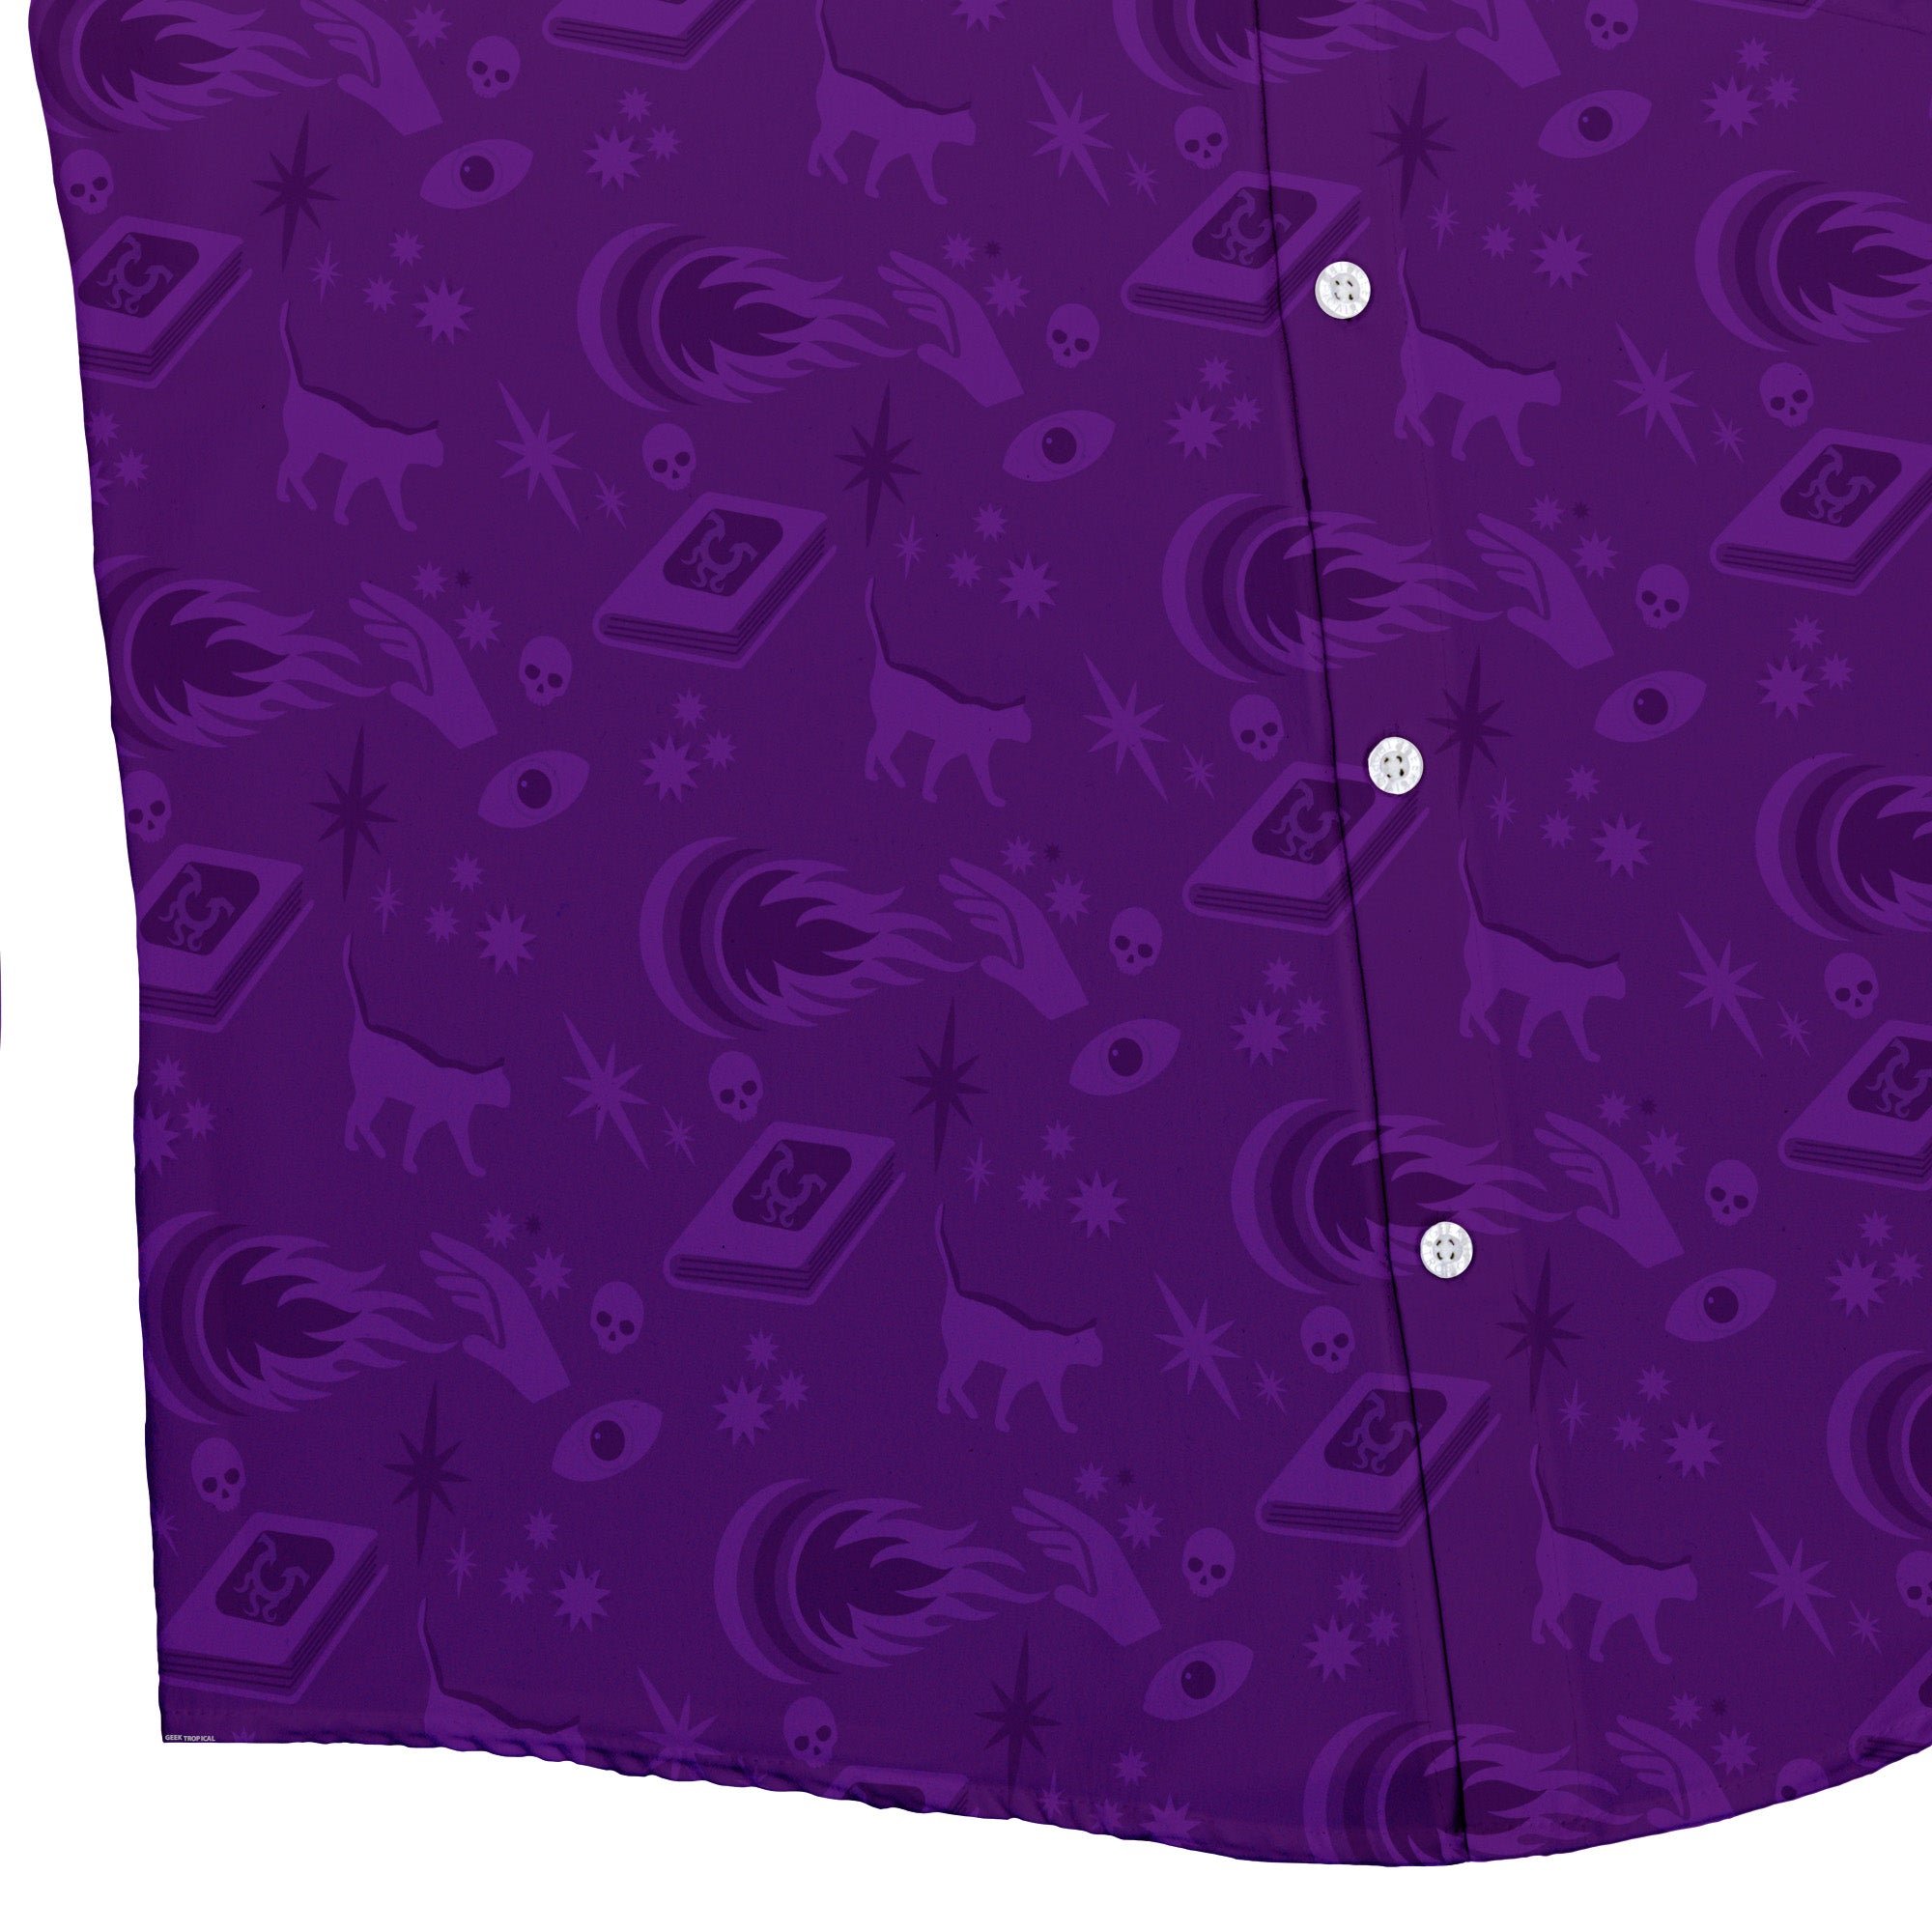 Dnd Warlock Class Button Up Shirt - adult sizing - Design by Heather Davenport - dnd & rpg print